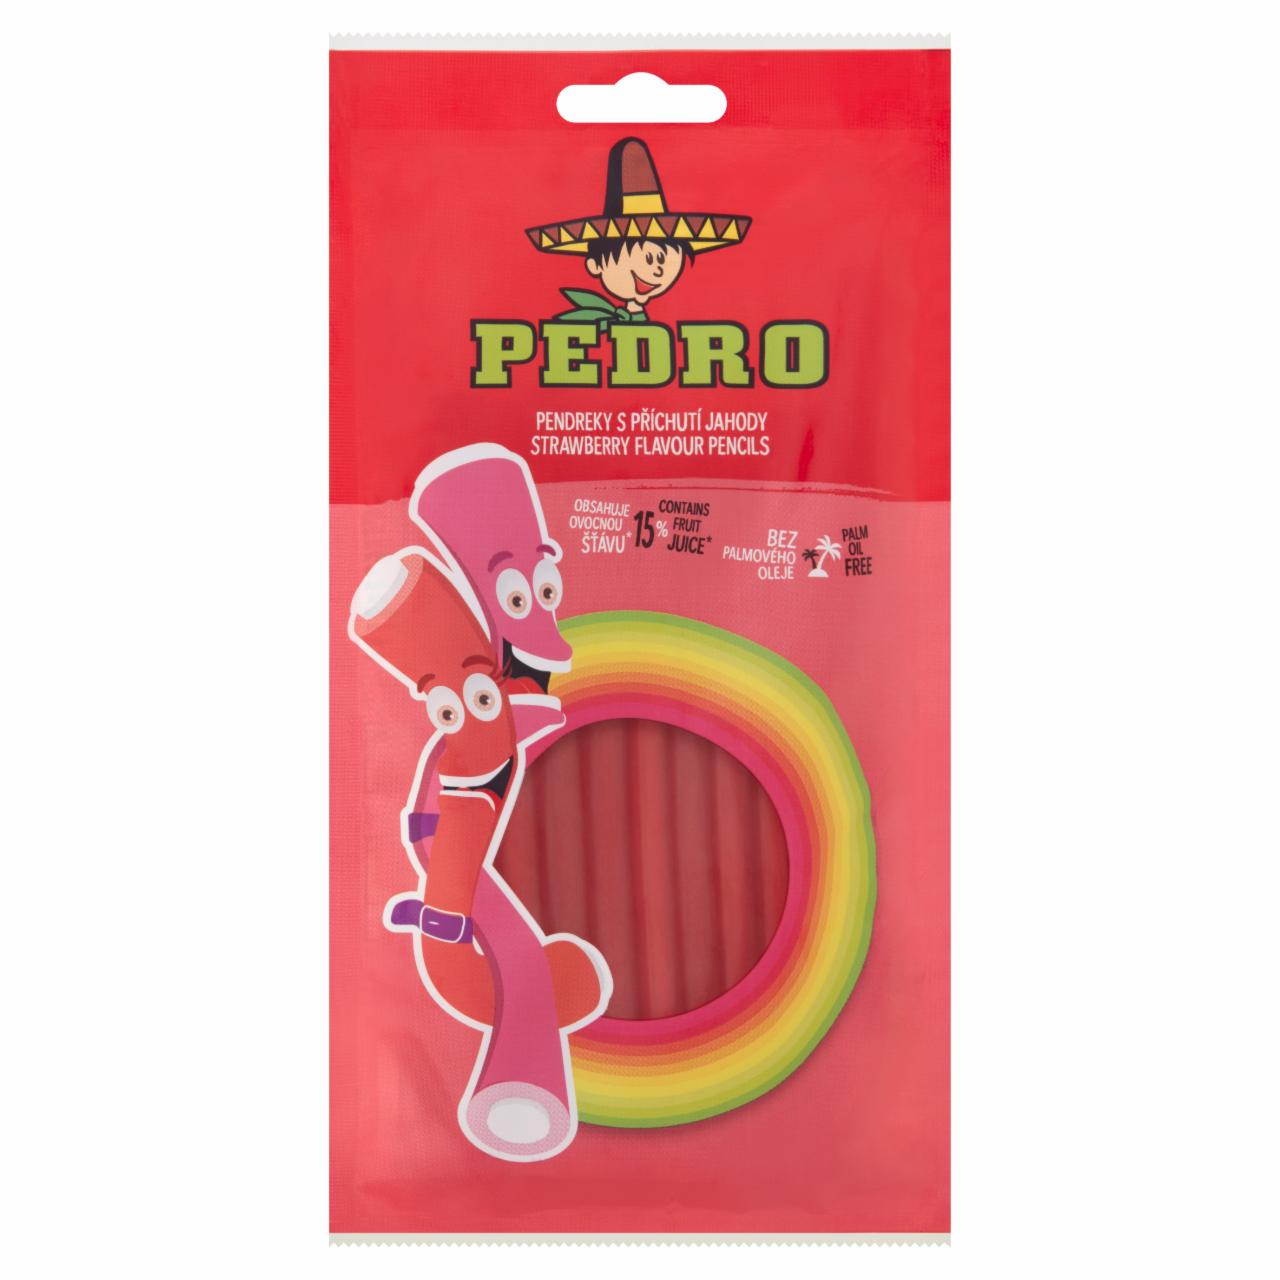 Képek - Pedro Strawberry Flavour Pencils gyümölcsös ízű gumicukor 85 g